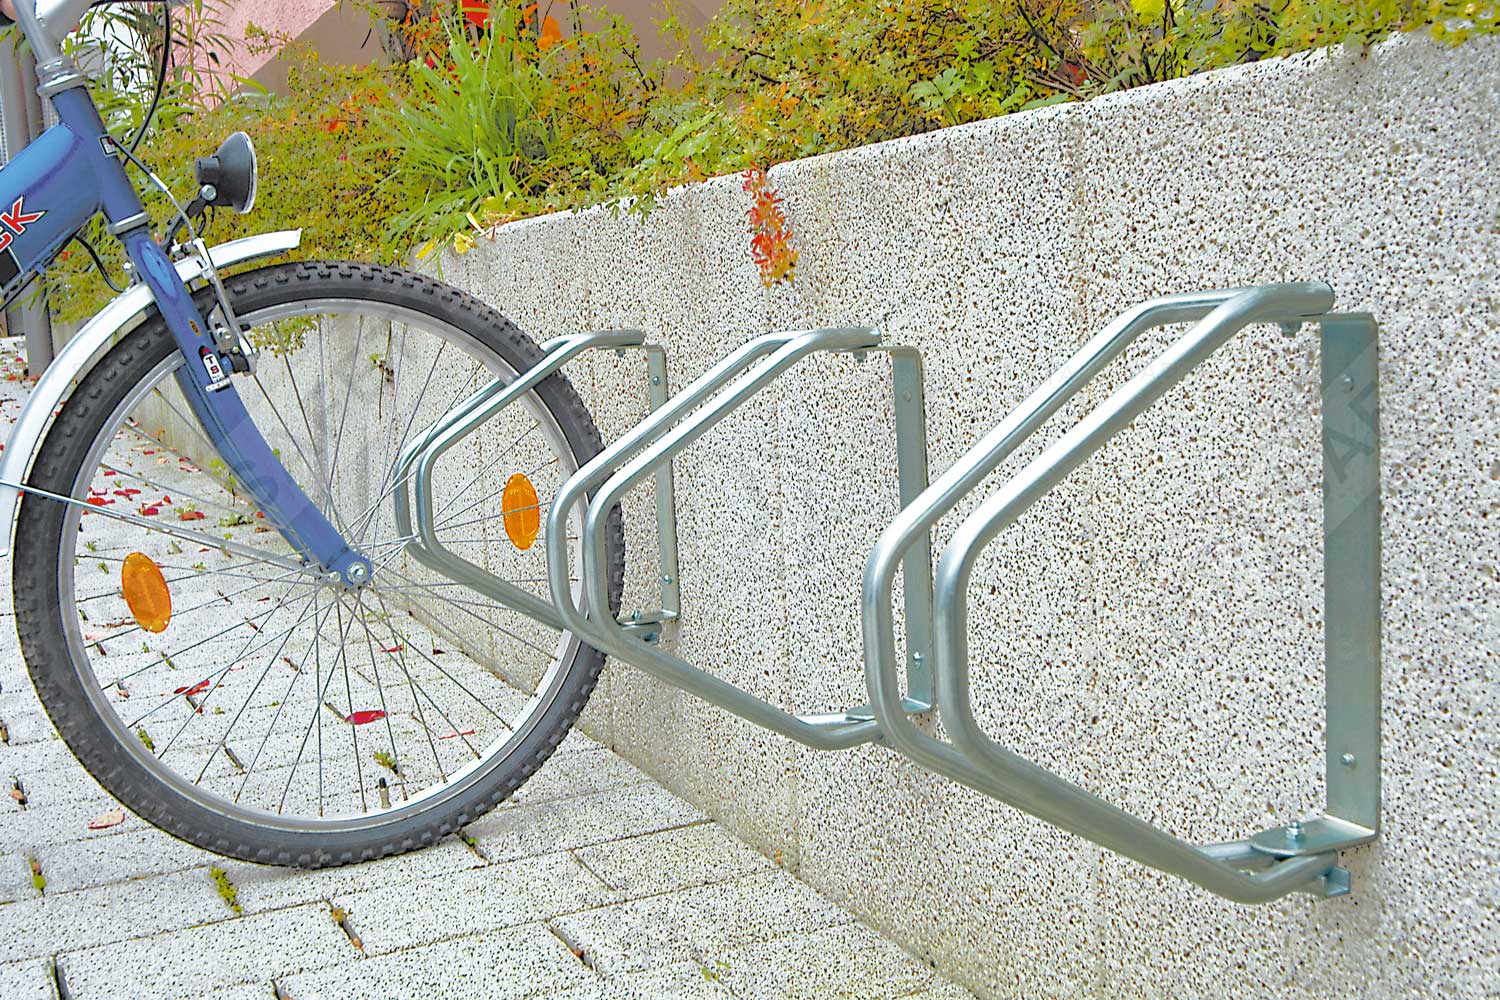 Wall mountable bike rack installed